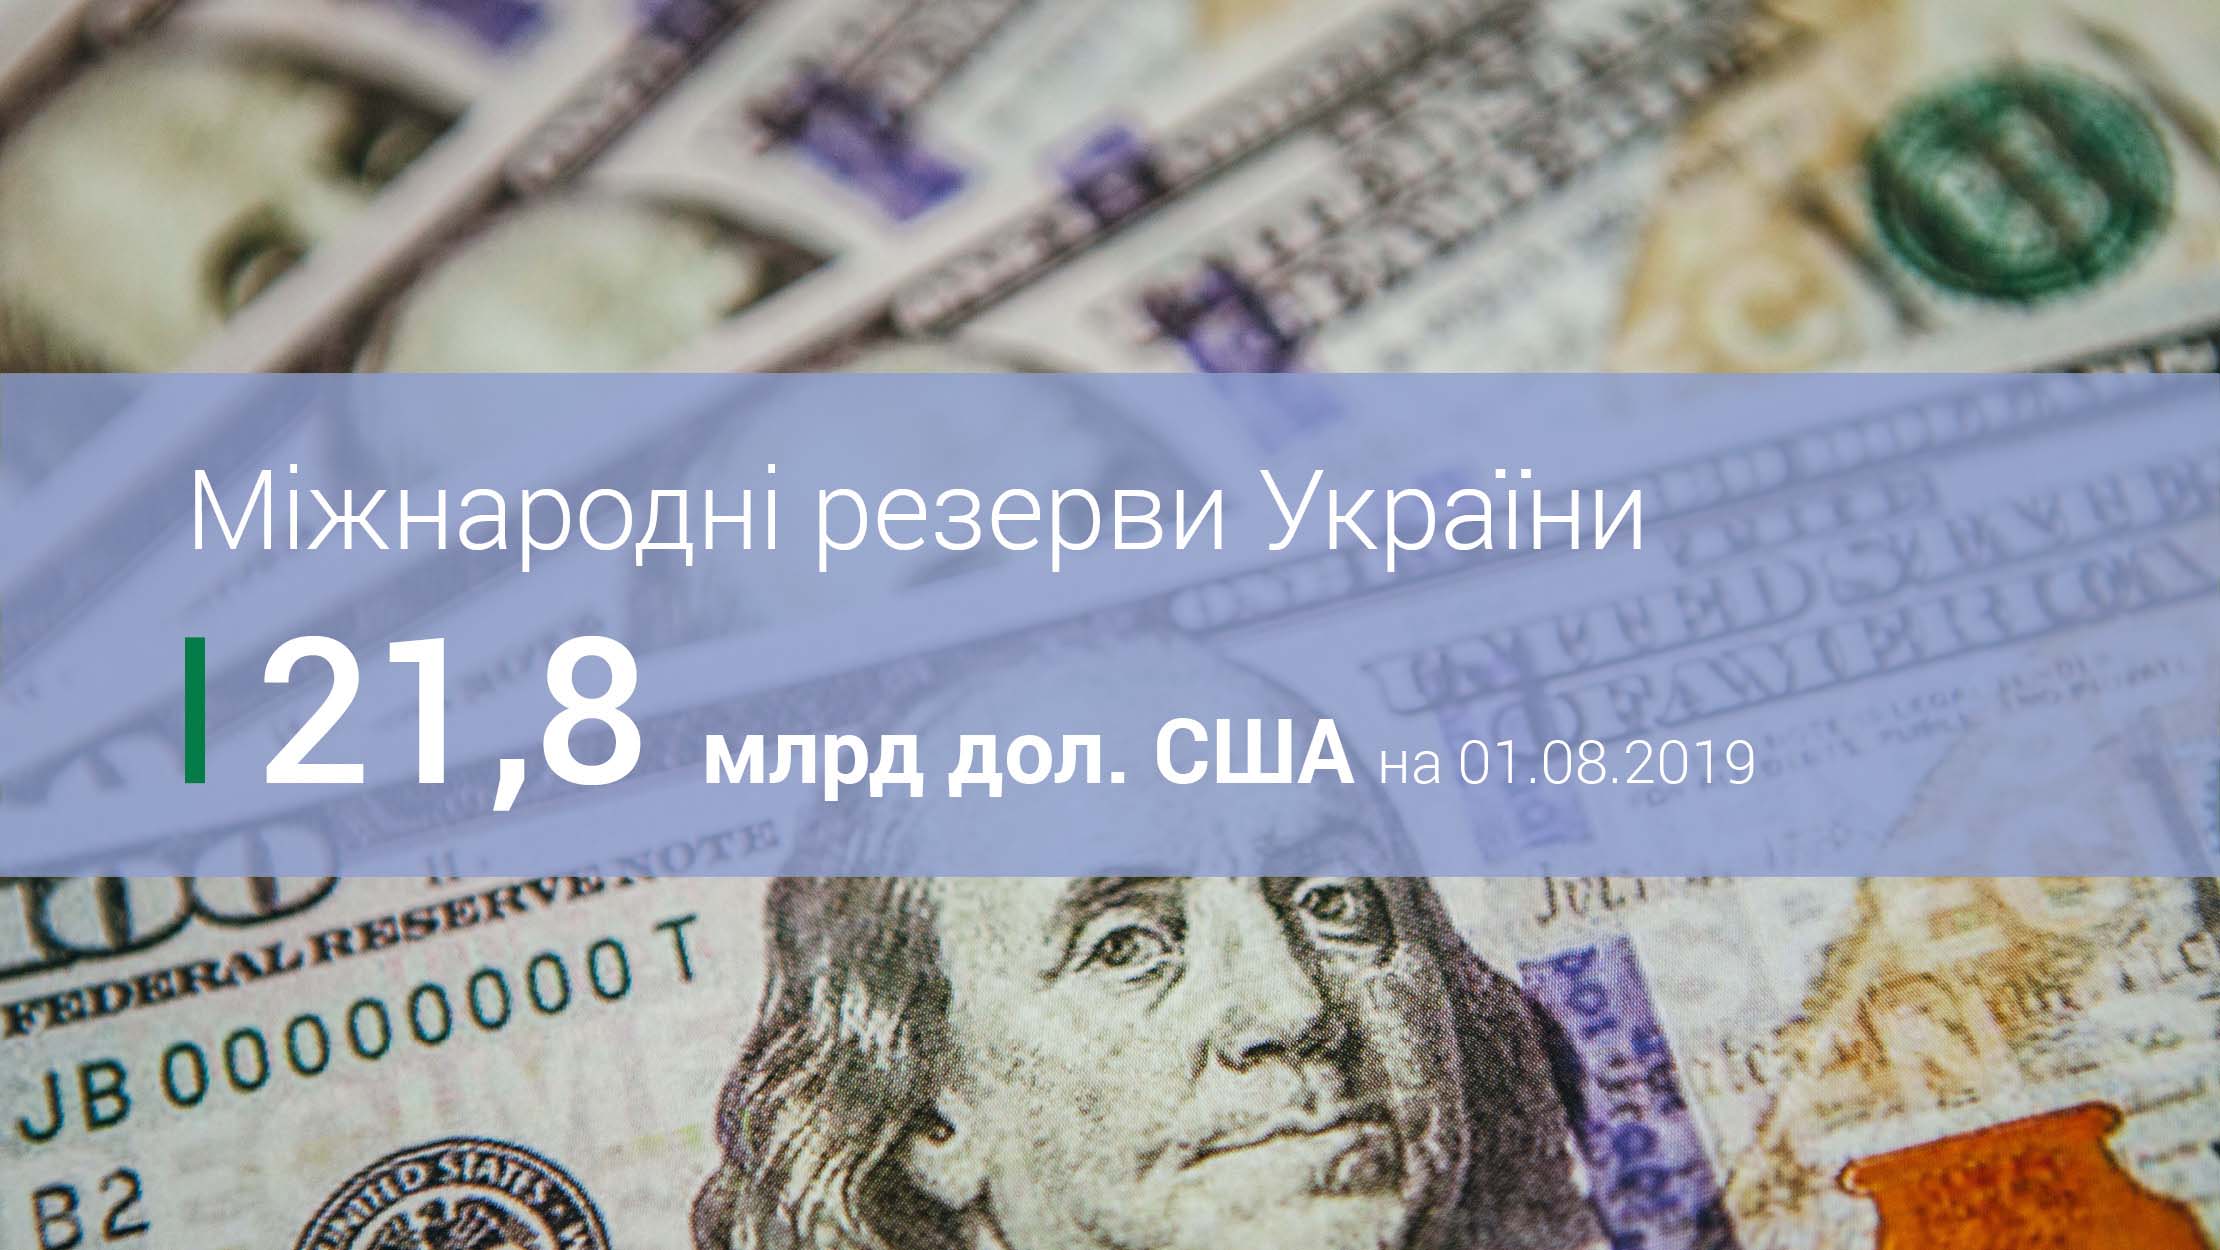 Міжнародні резерви України у липні зросли на 1,2 млрд дол. США